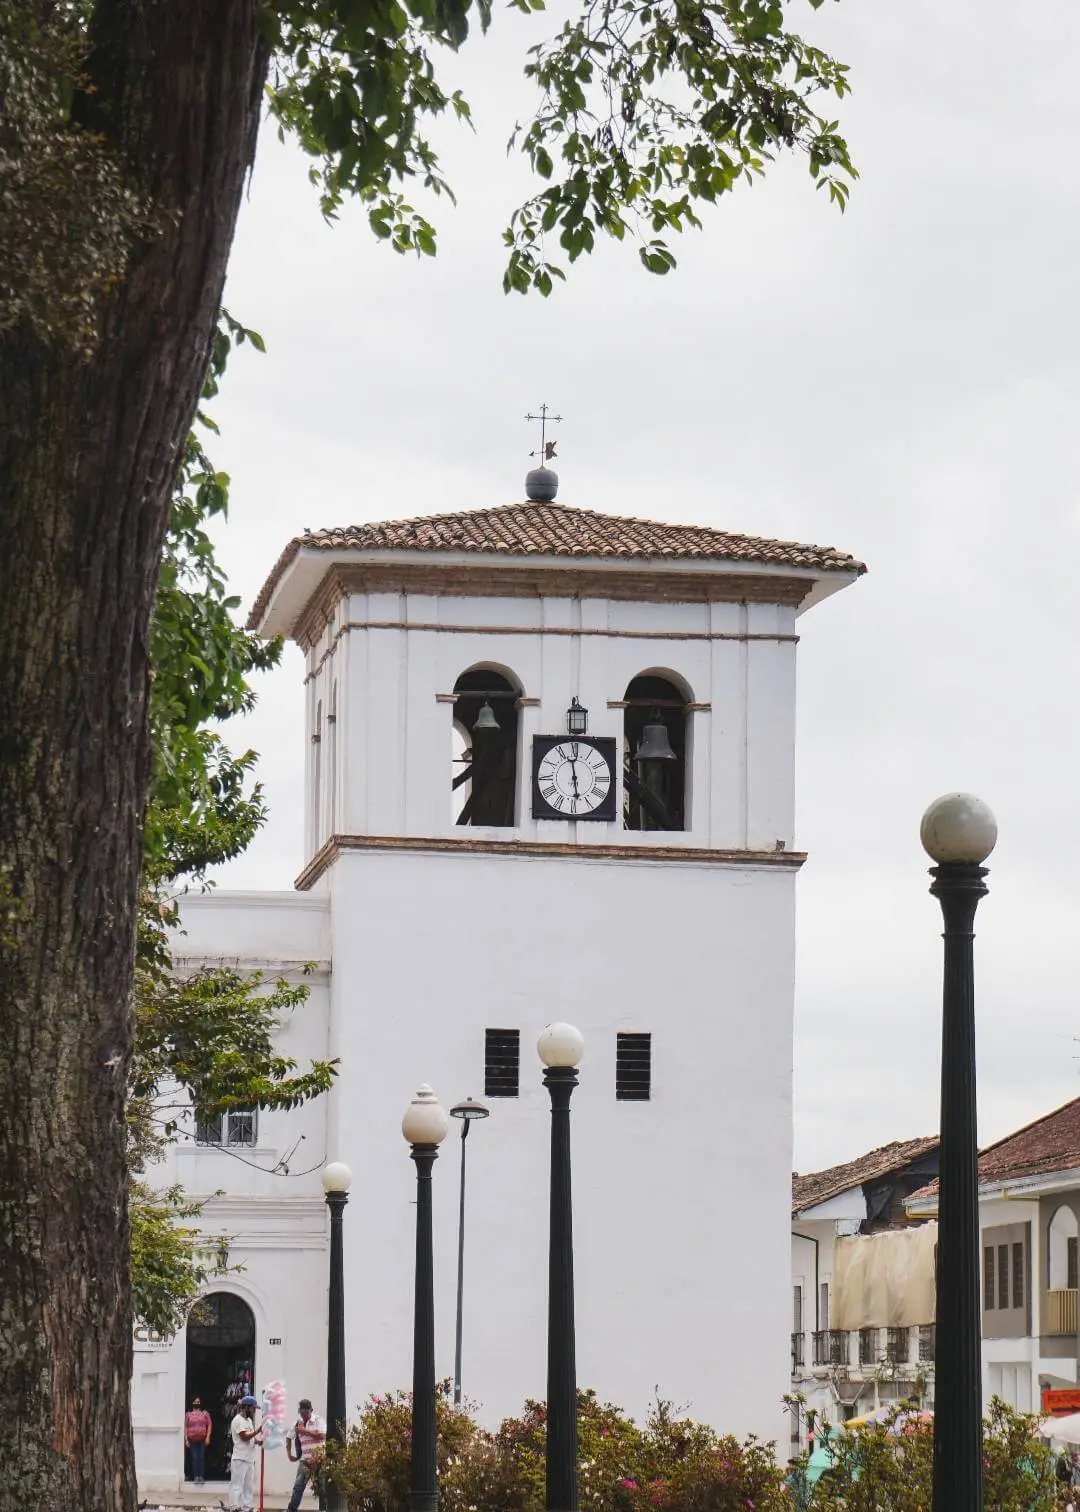 Torre del Reloj del centro histórico de Popayán Cauca Colombia